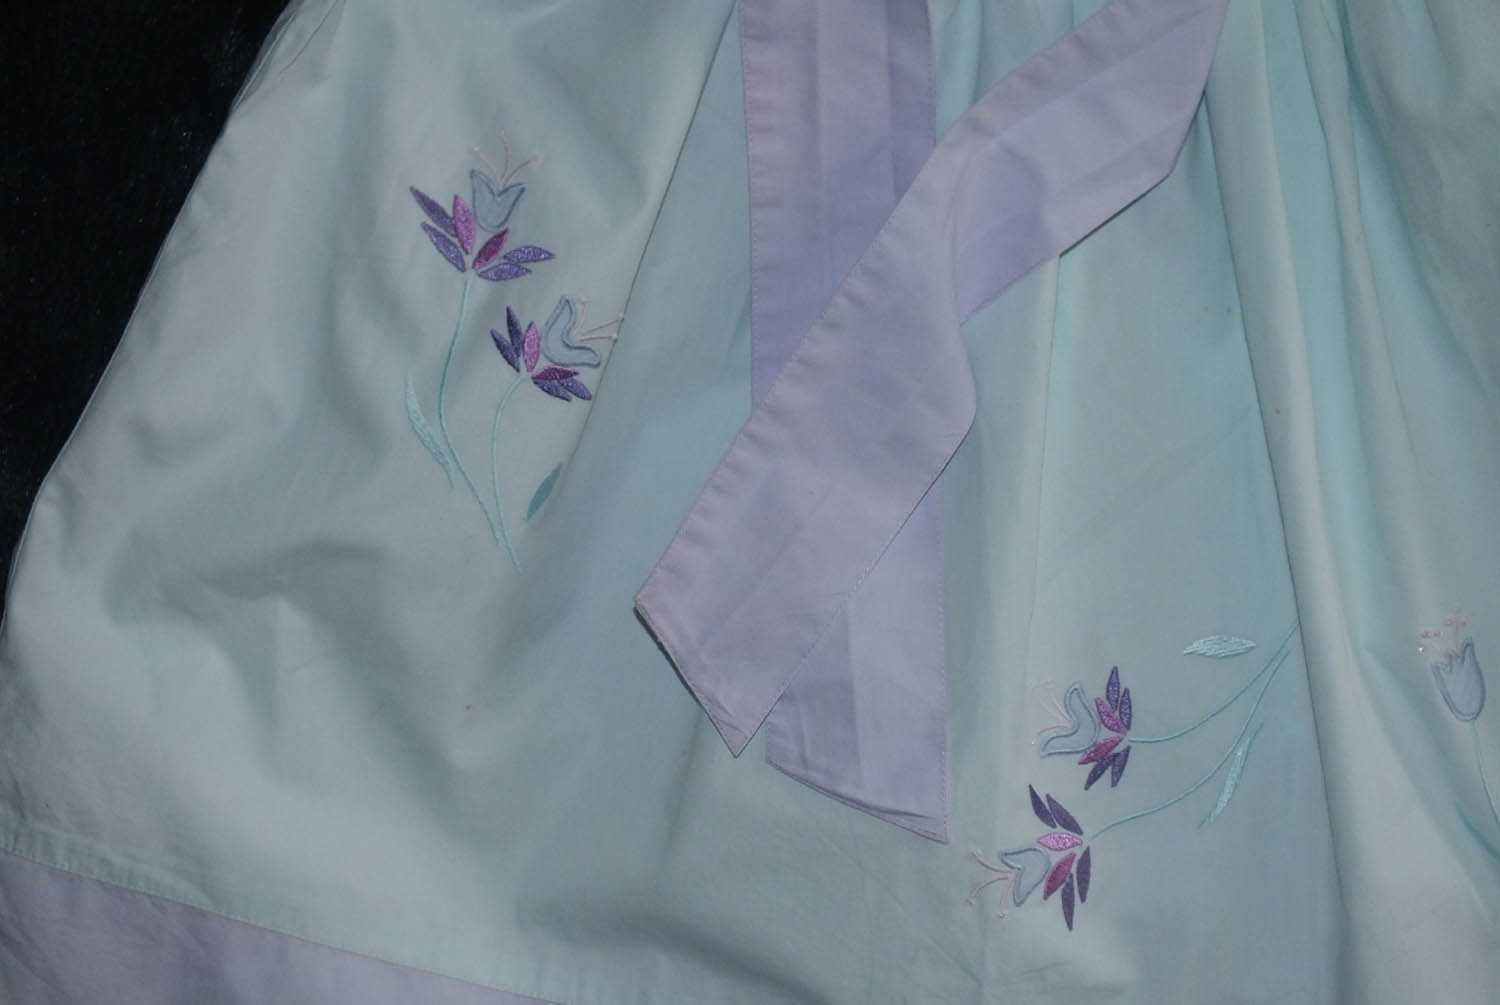 NEXT Letnia sukienka pastelowa wiązana hafty błękit r. 140-146